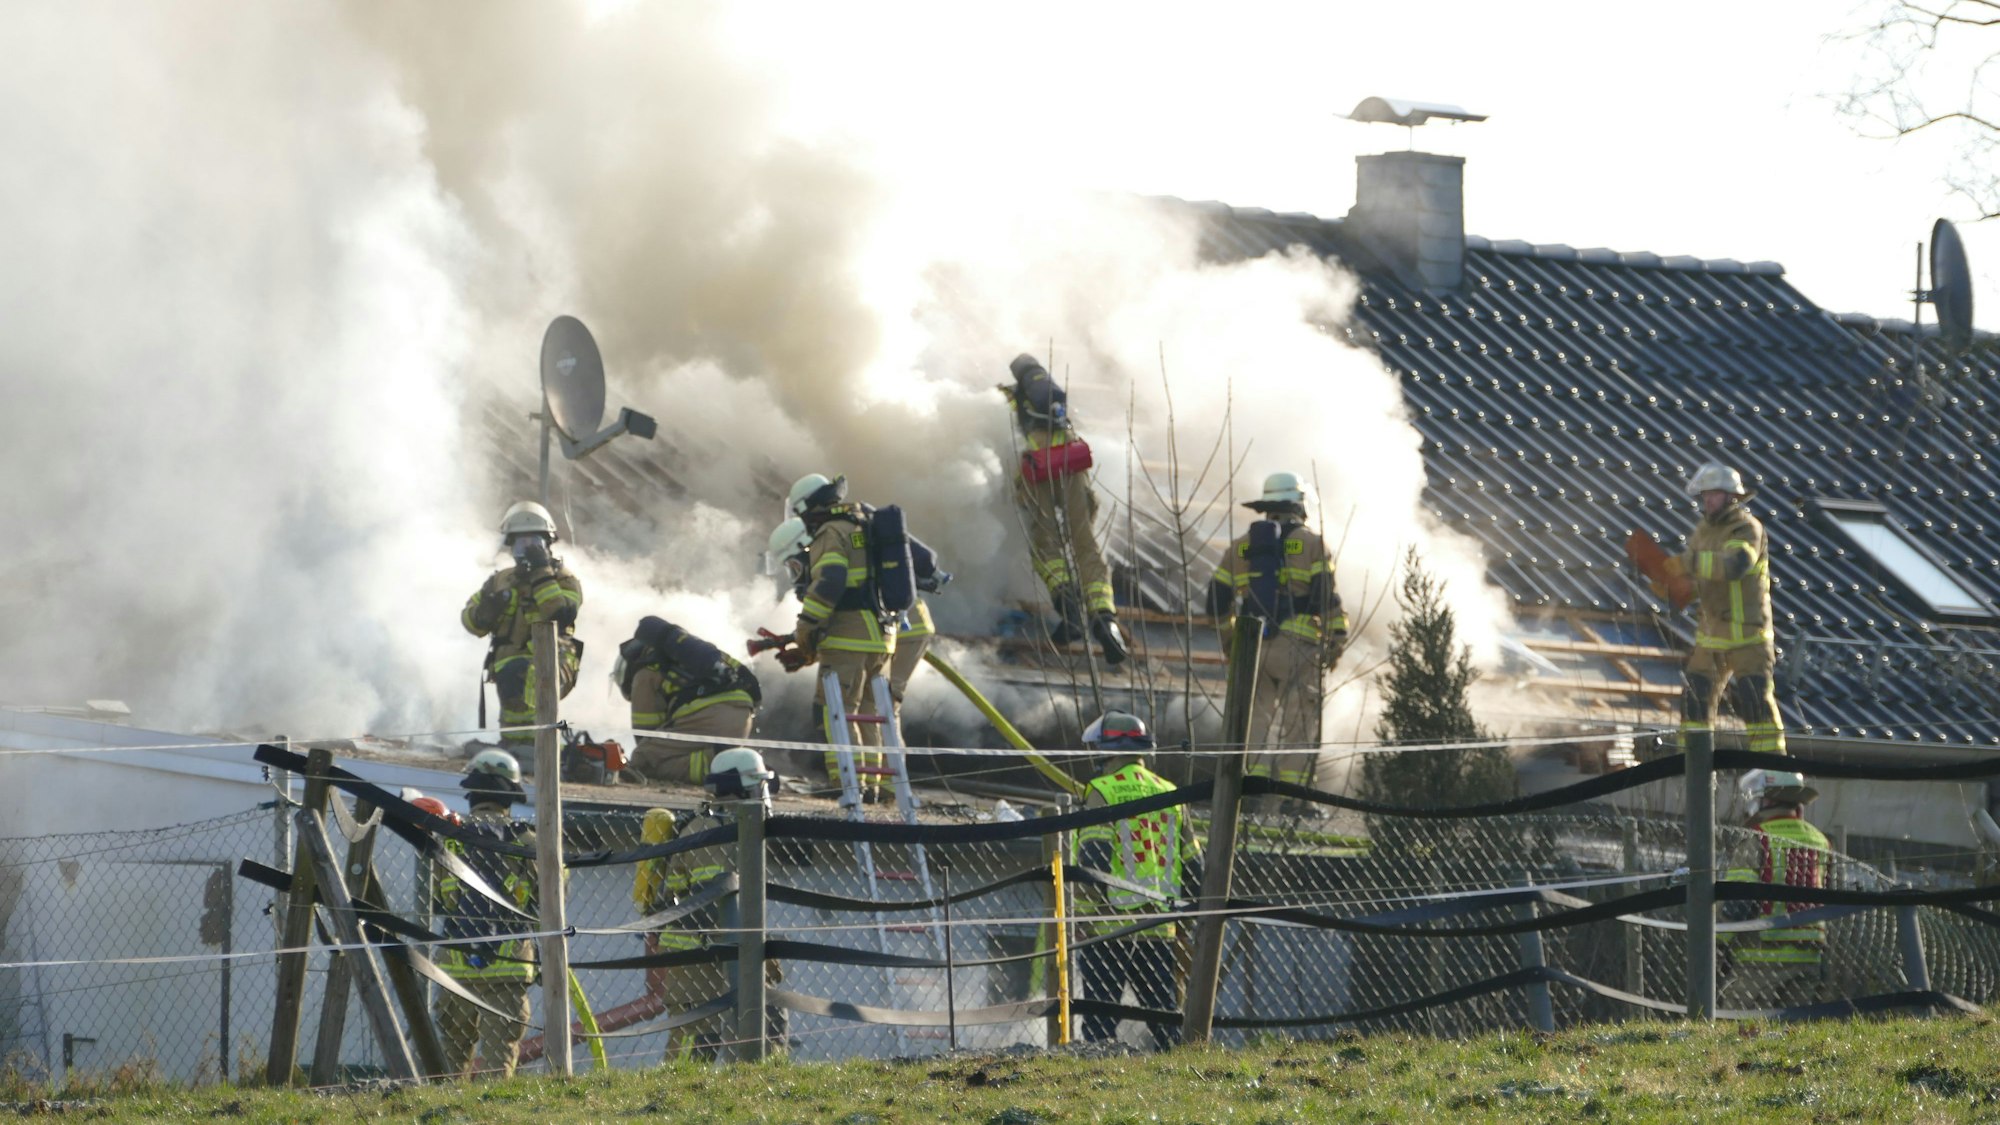 Feuerwehrleute löschen ein brennendes Gebäude. Es steigen Rauch und Dampf auf.